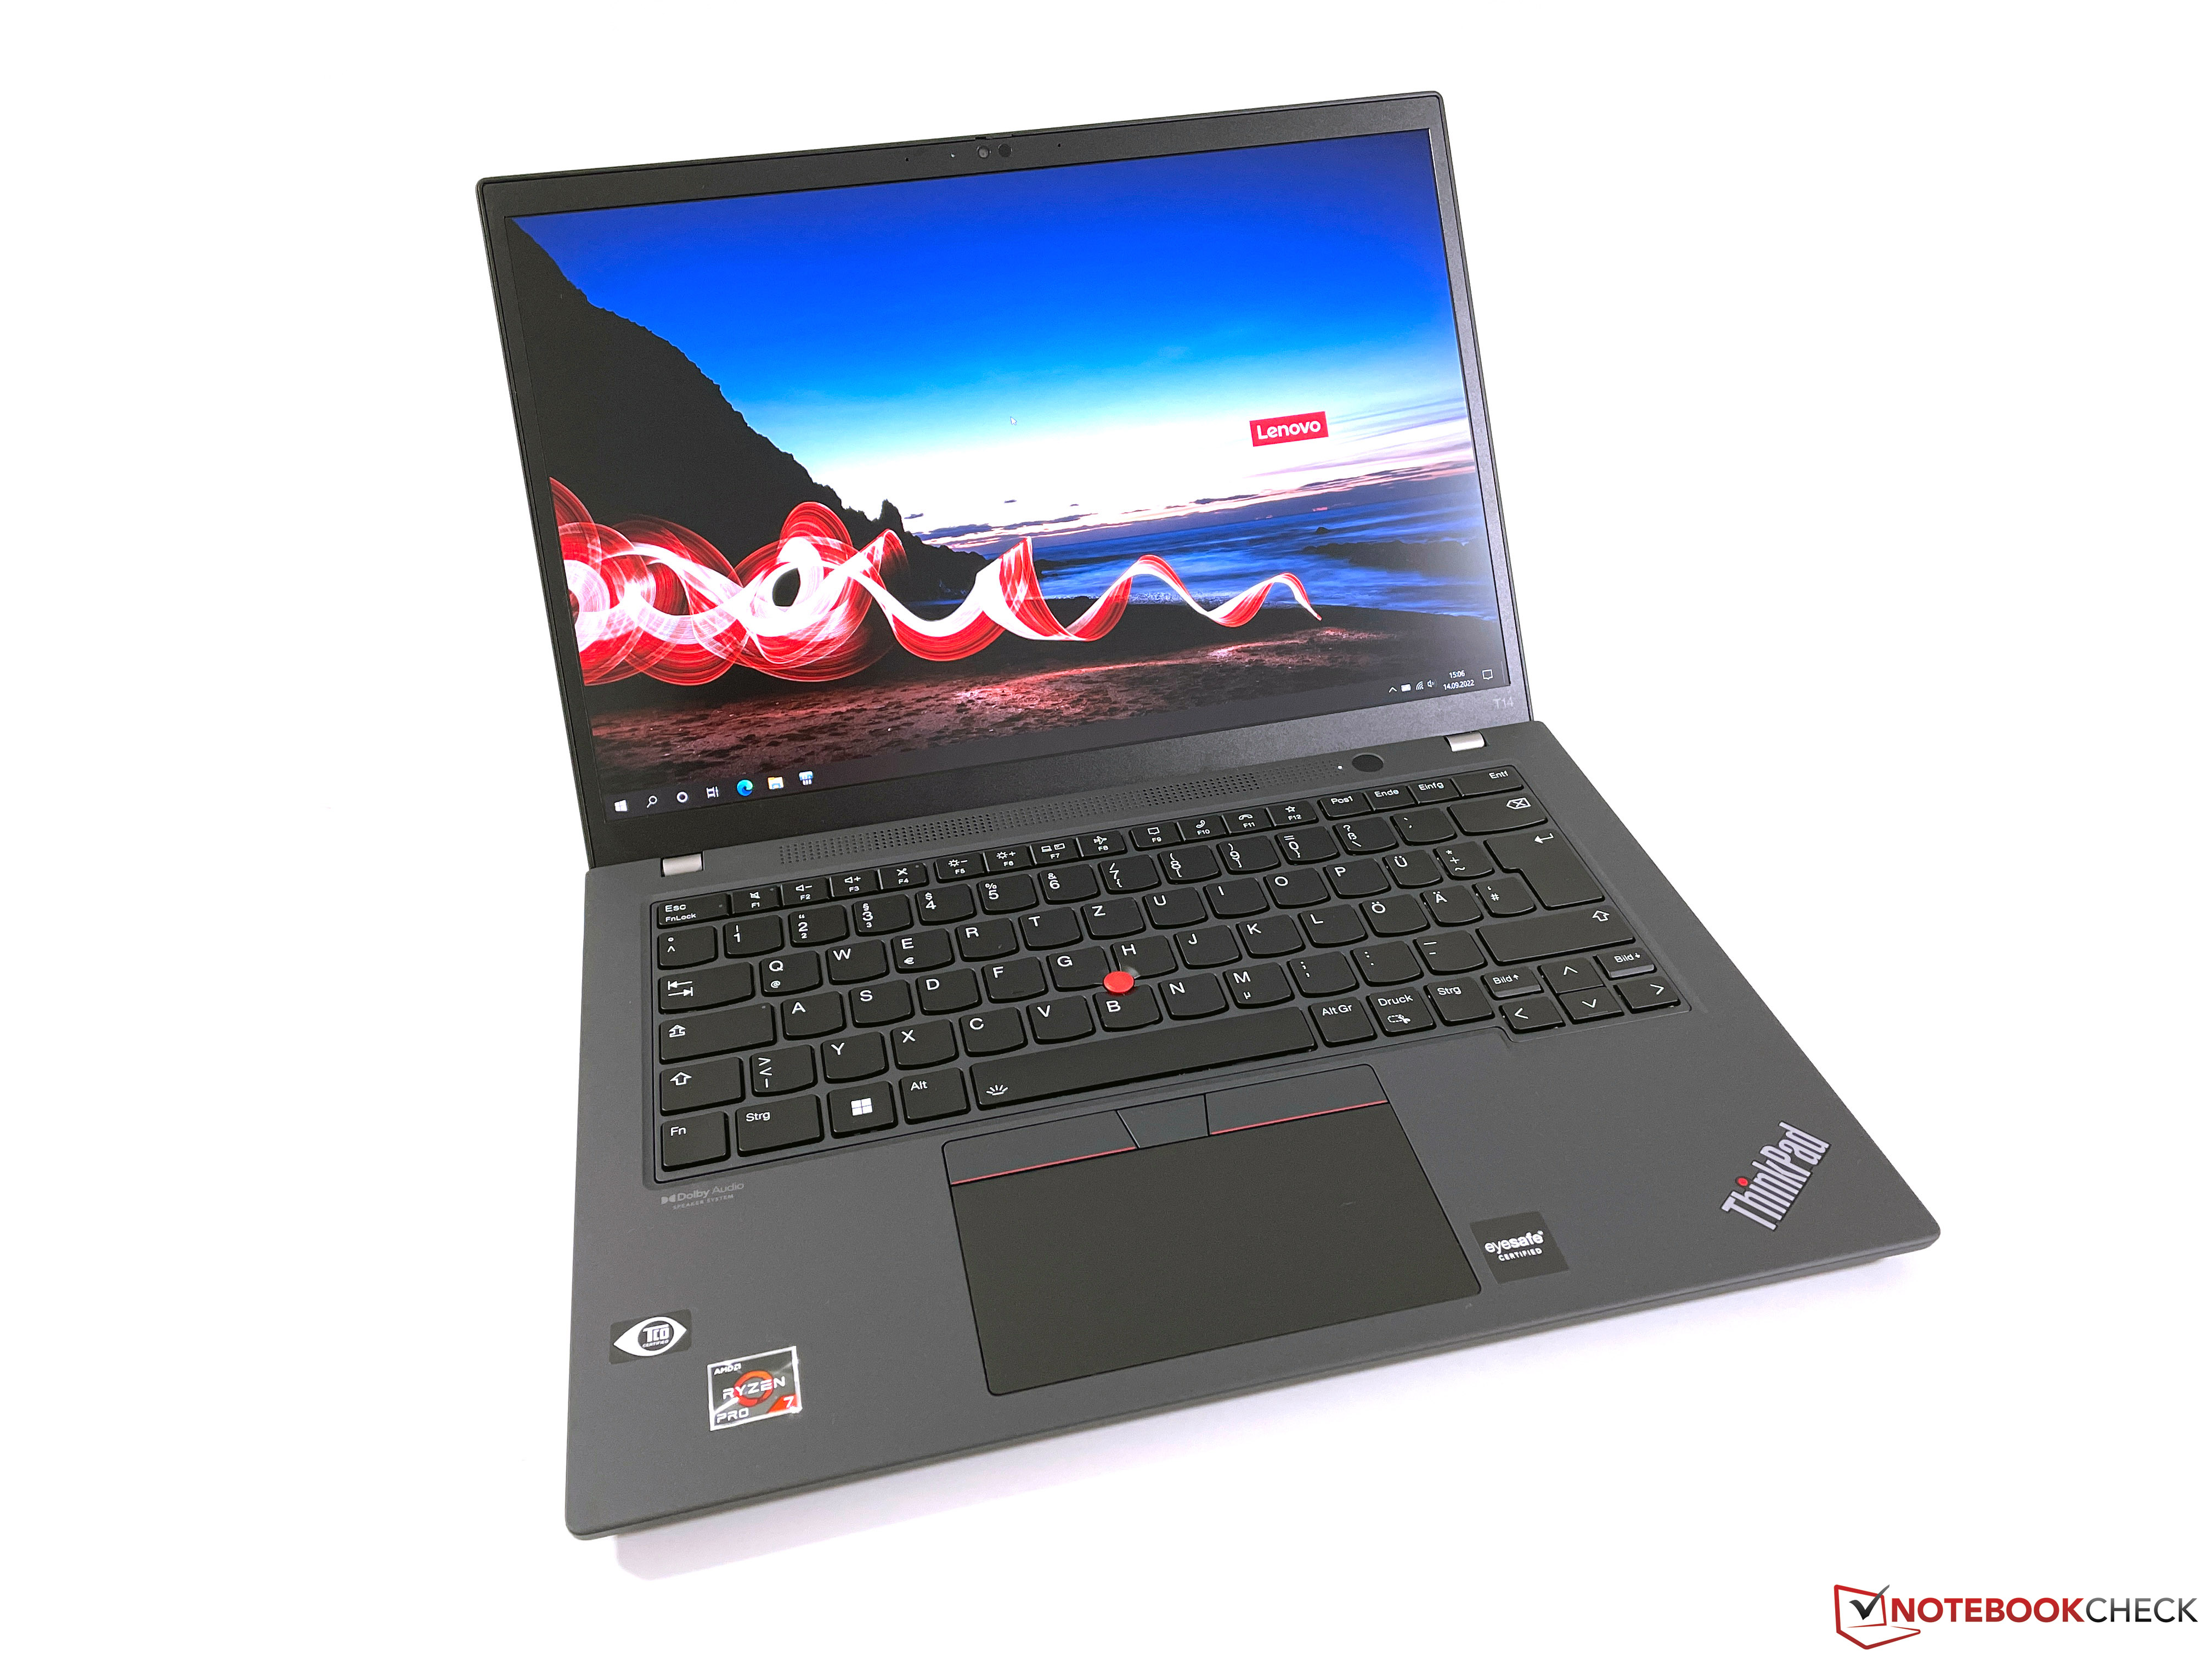 Lenovo ThinkPad T14 G3 với bộ xử lý AMD mang lại hiệu suất mạnh mẽ và tuổi thọ pin lâu dài. Nếu bạn đang tìm kiếm một laptop chất lượng cao với giá cả hợp lý, đây là lựa chọn hoàn hảo cho bạn. Xem Lenovo ThinkPad T14 G3 review với AMD processor và khám phá thêm về tính năng nổi bật của thiết bị này. Translation: Lenovo ThinkPad T14 G3 with AMD processor brings powerful performance and long battery life. If you\'re looking for a high-quality laptop at a reasonable price, this is the perfect choice for you. Watch Lenovo ThinkPad T14 G3 review with AMD processor and discover more about its outstanding features.